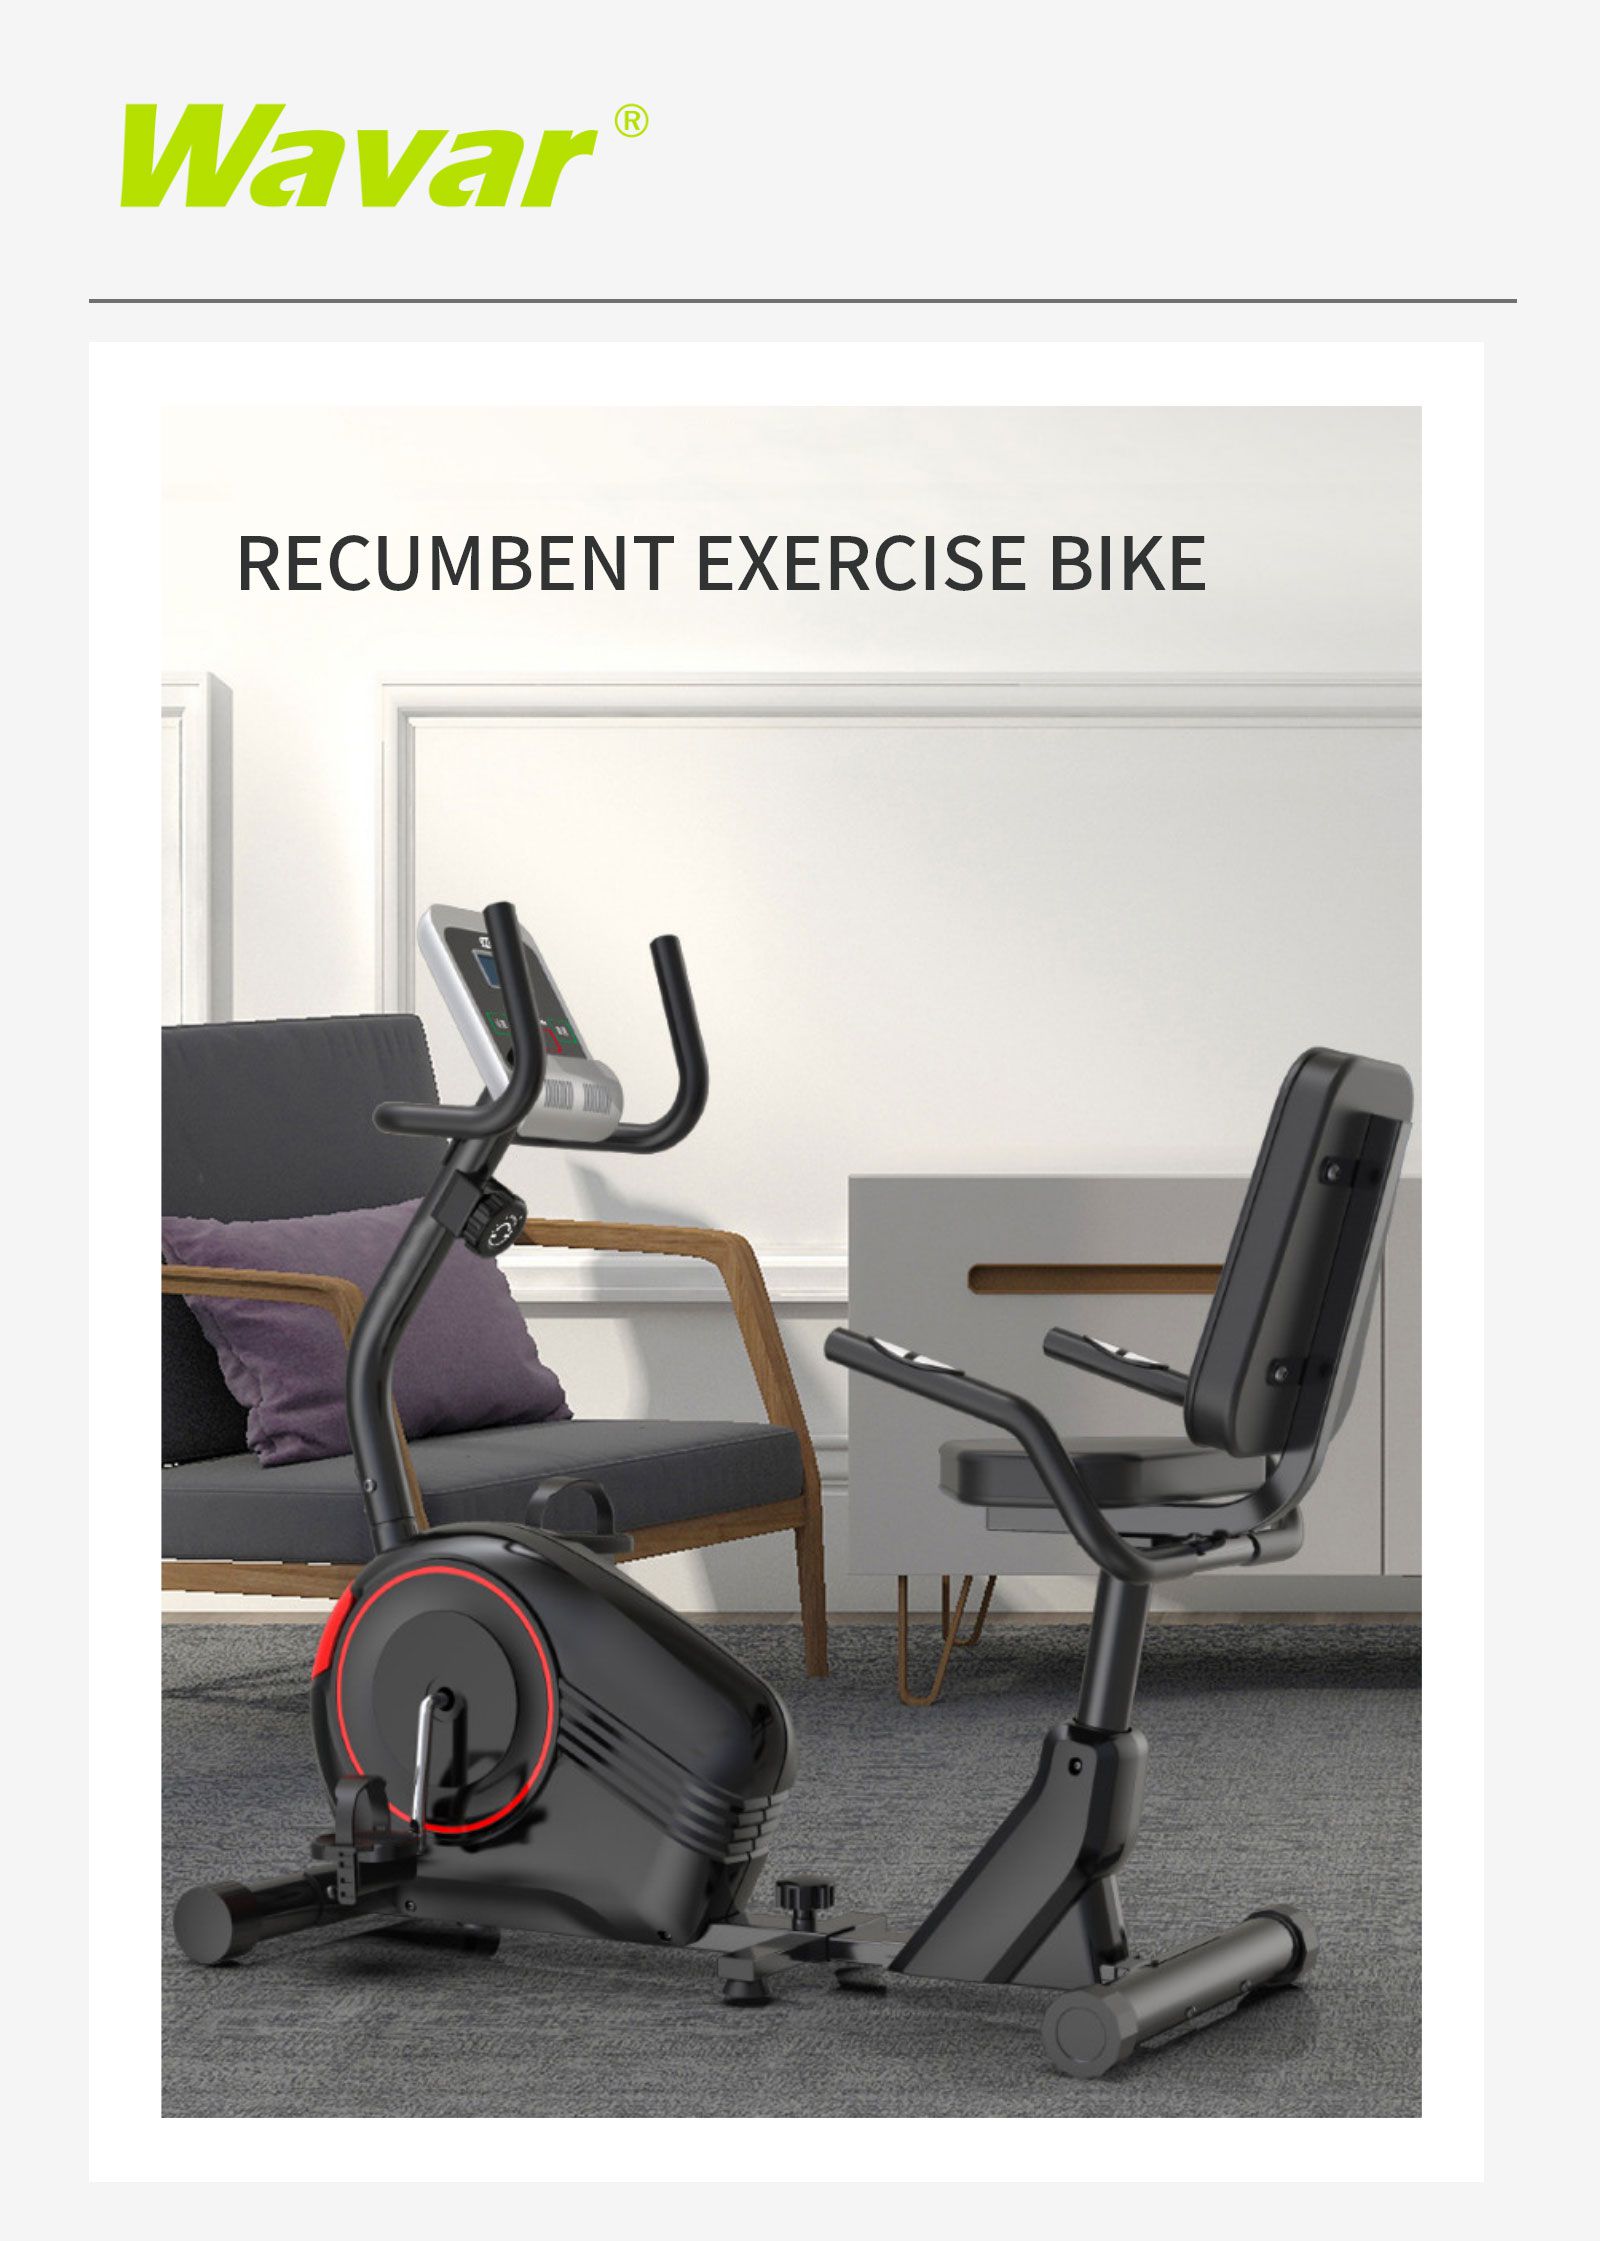 Recumbent Exercise Bike